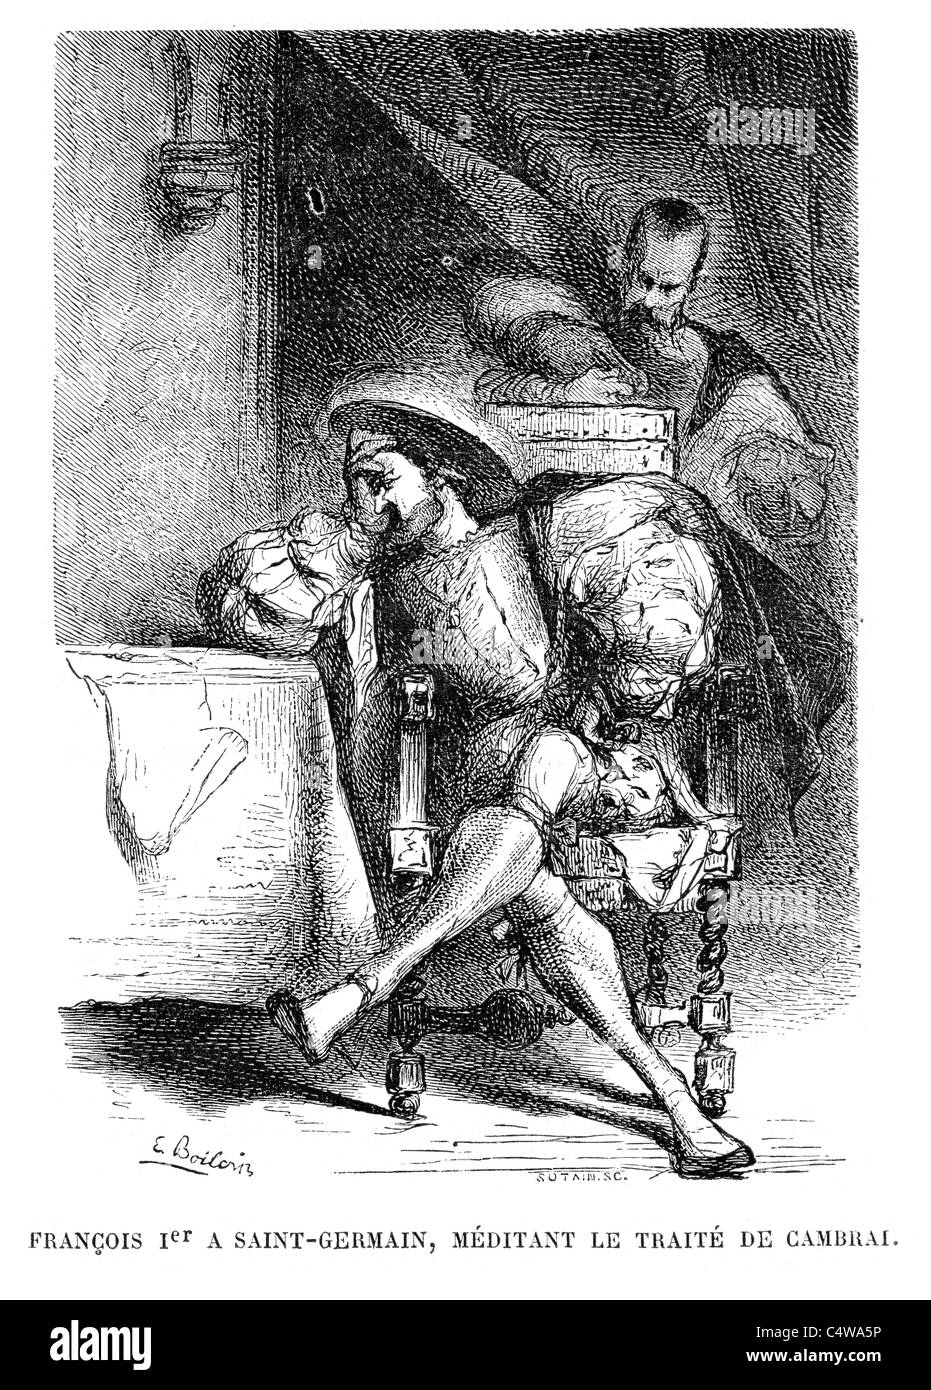 König Francois 1. in St-Germain Meditation über den Vertrag von Cambrai nach seiner Niederlage im Krieg der Liga von Cognac Stockfoto